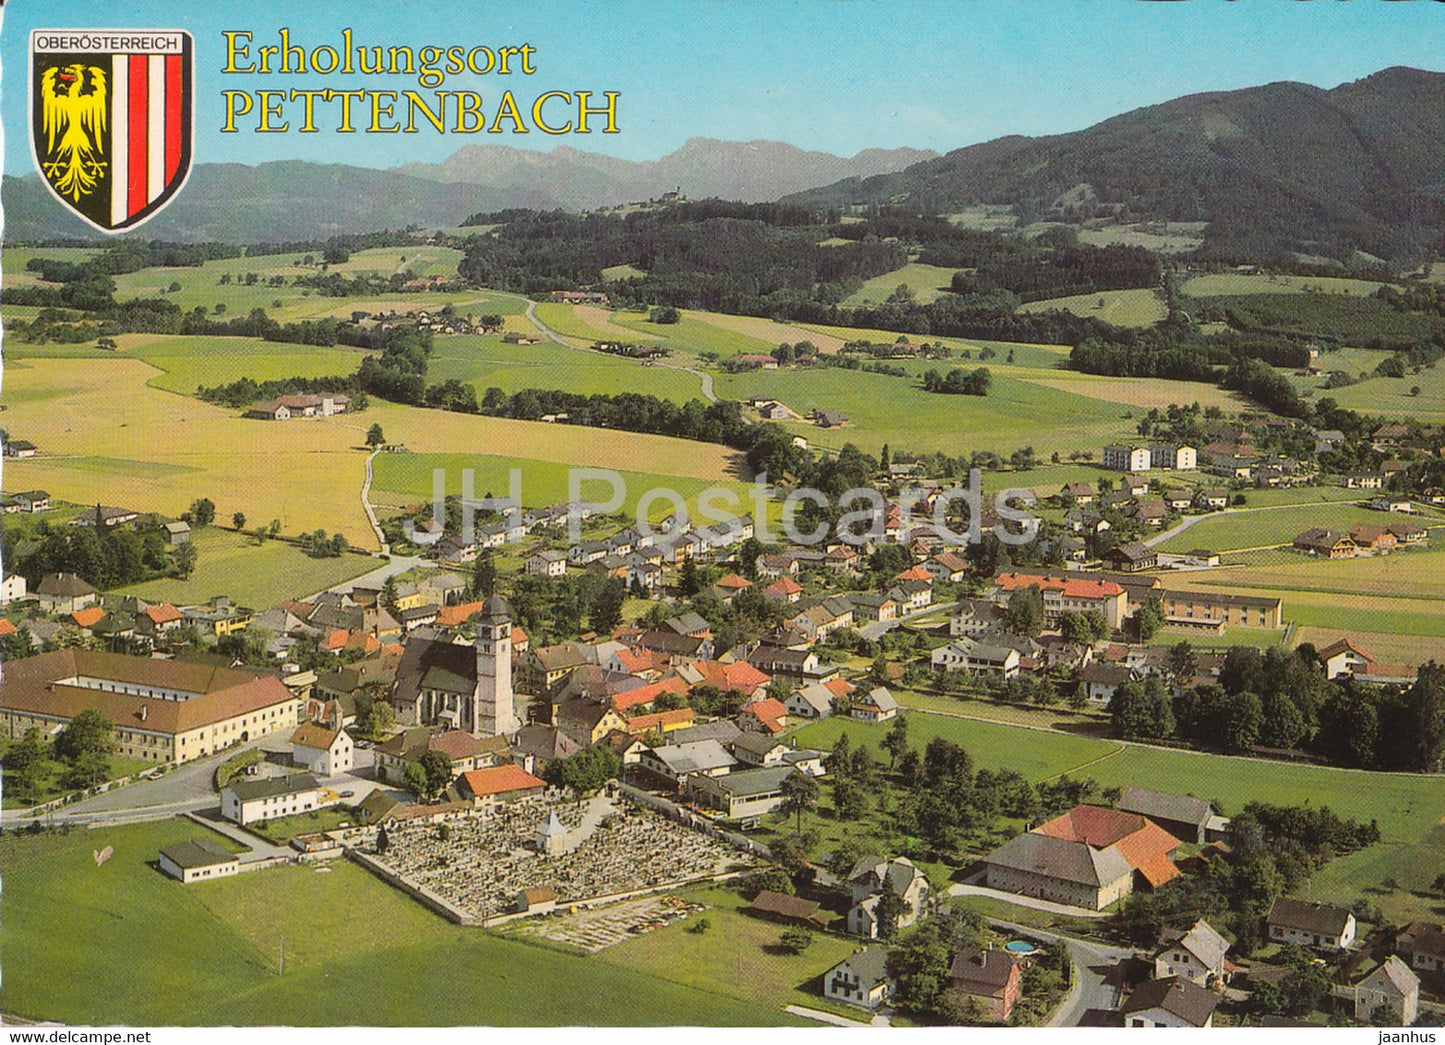 Erholungsort Pettenbach 516 m - Almtal - 1984 - Austria - used - JH Postcards